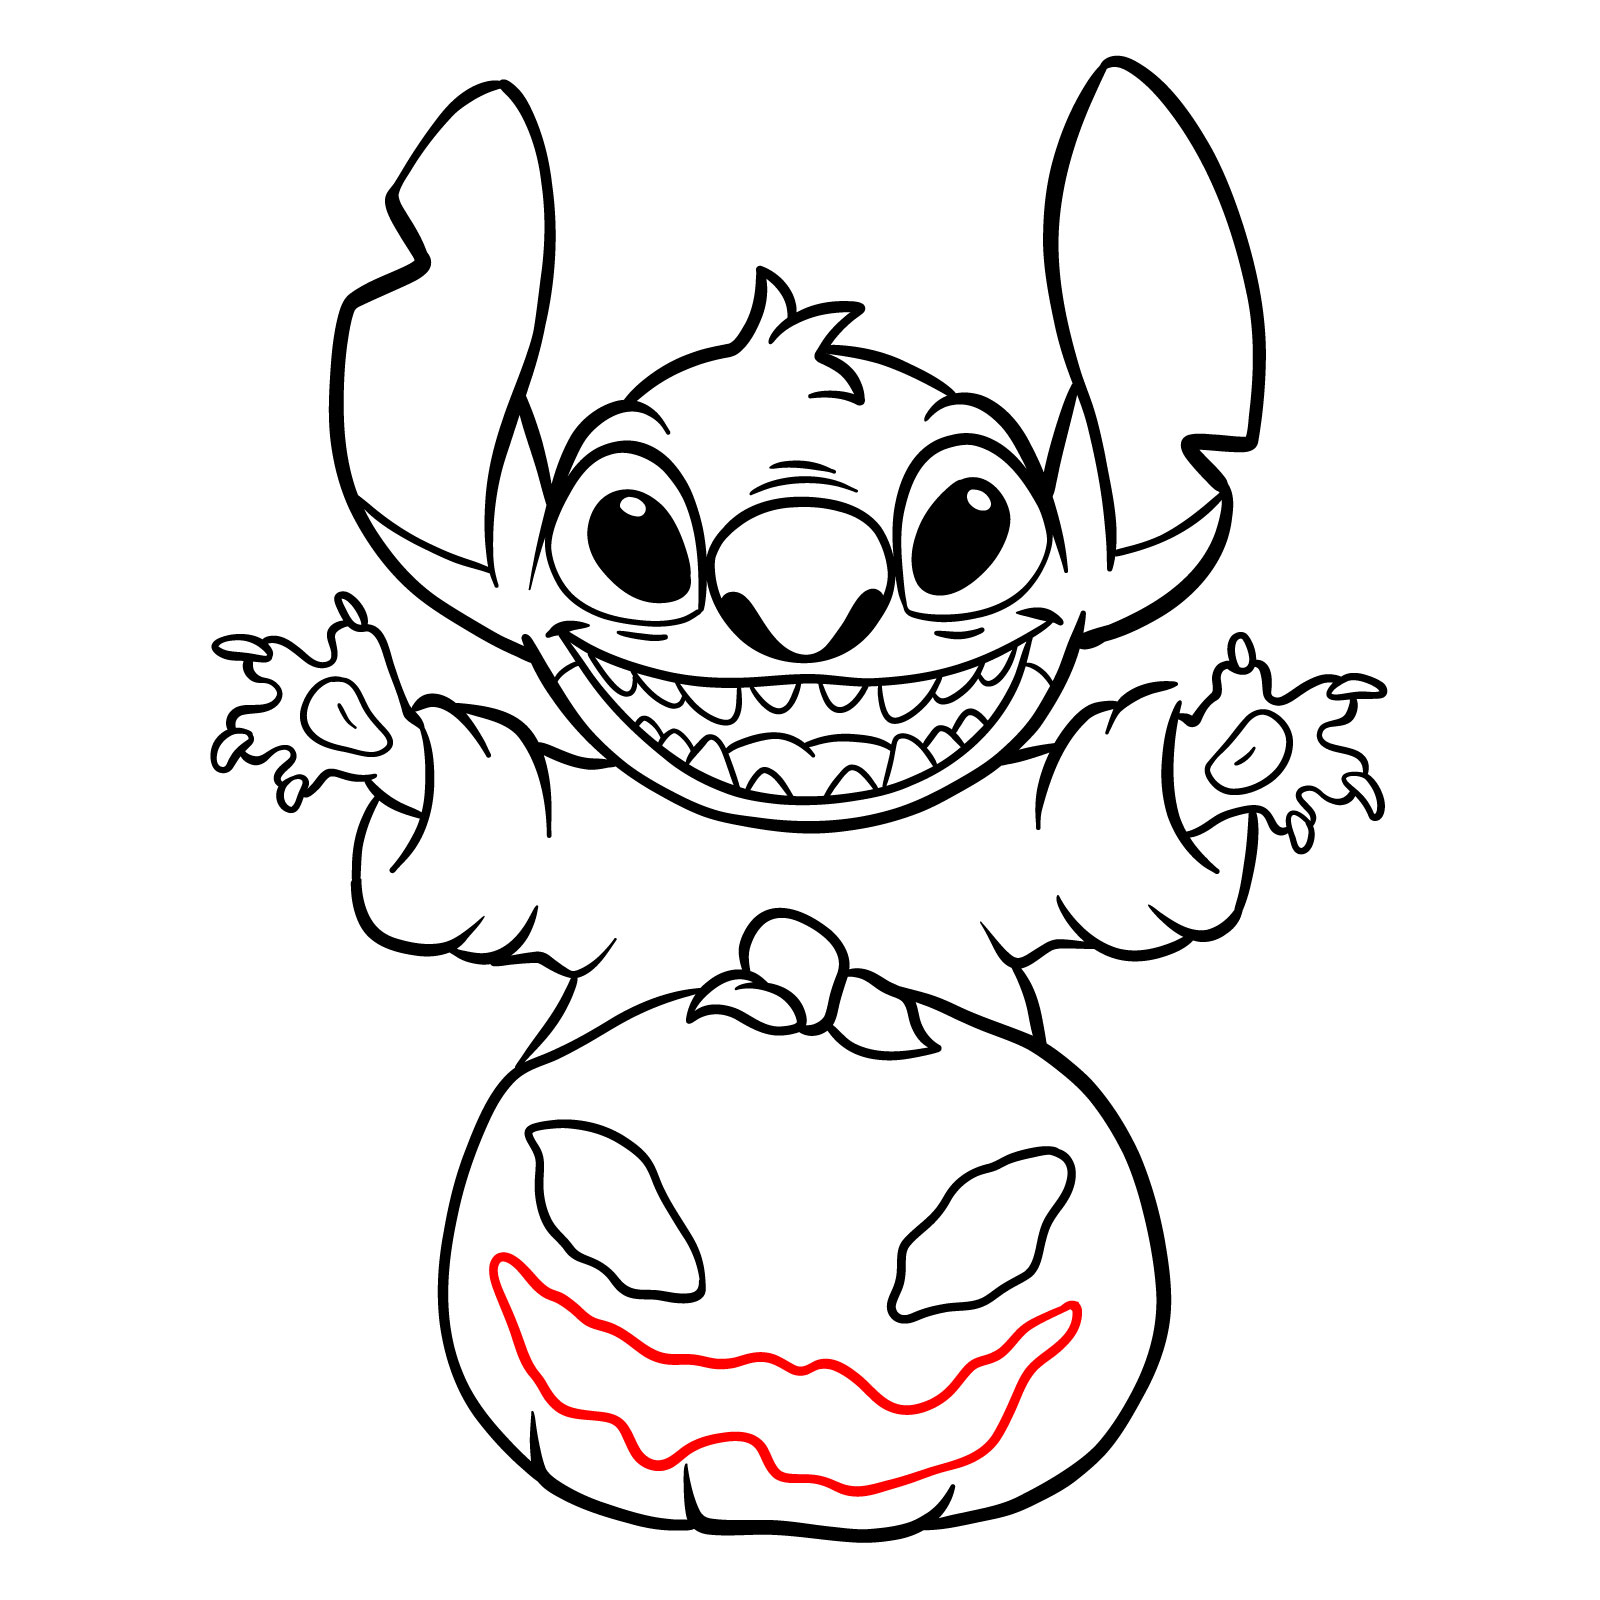 How to Draw Halloween Stitch with a jack-o'-lantern - step 25